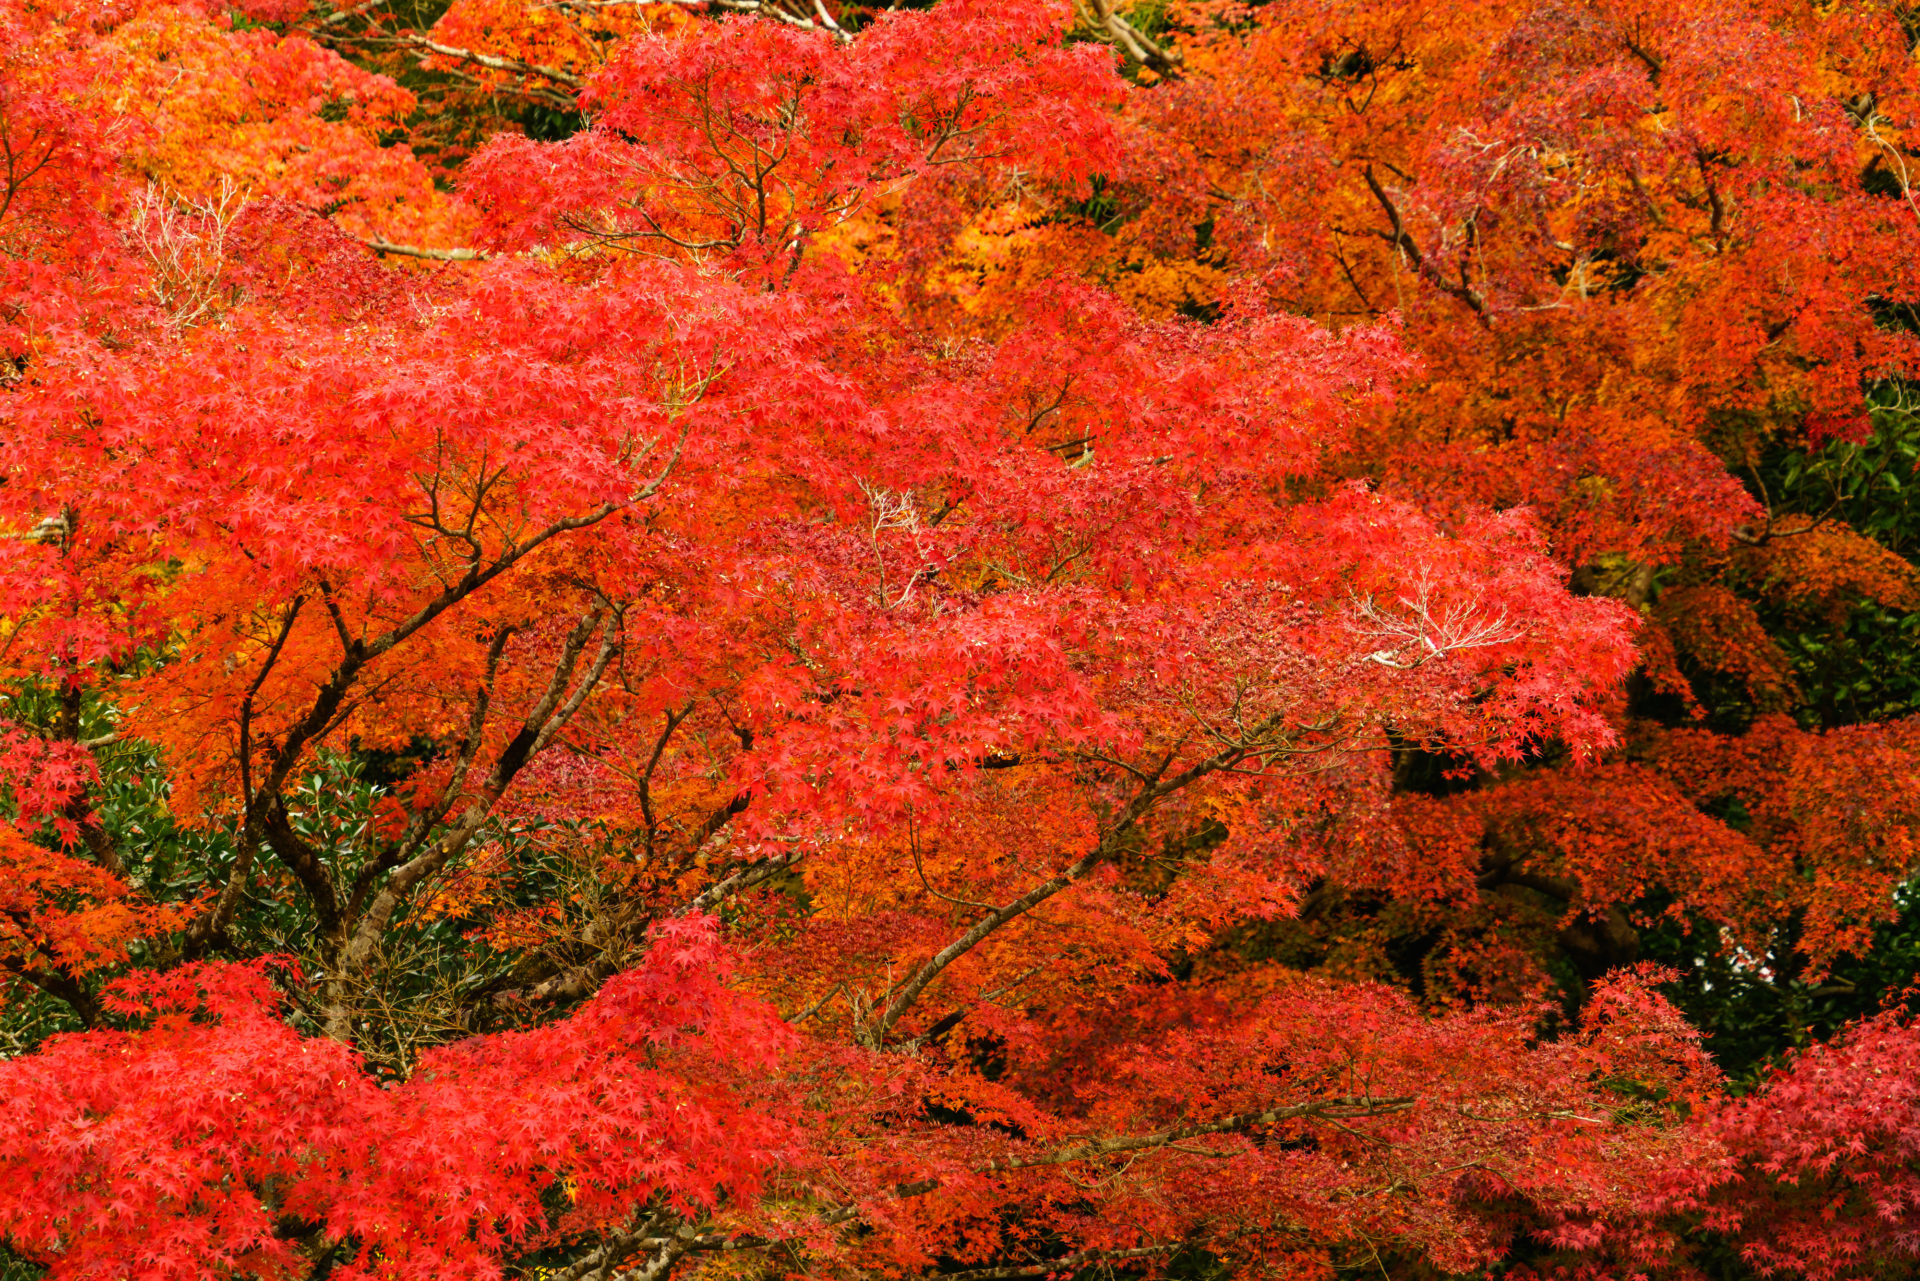 紅葉の季節に桜の魅力を語るのは天邪鬼でしょうか いいえ 桜にも秋ならではの楽しみ方があります Caedekyoto カエデ京都 紅葉 と伝統美を引き継ぐバッグ